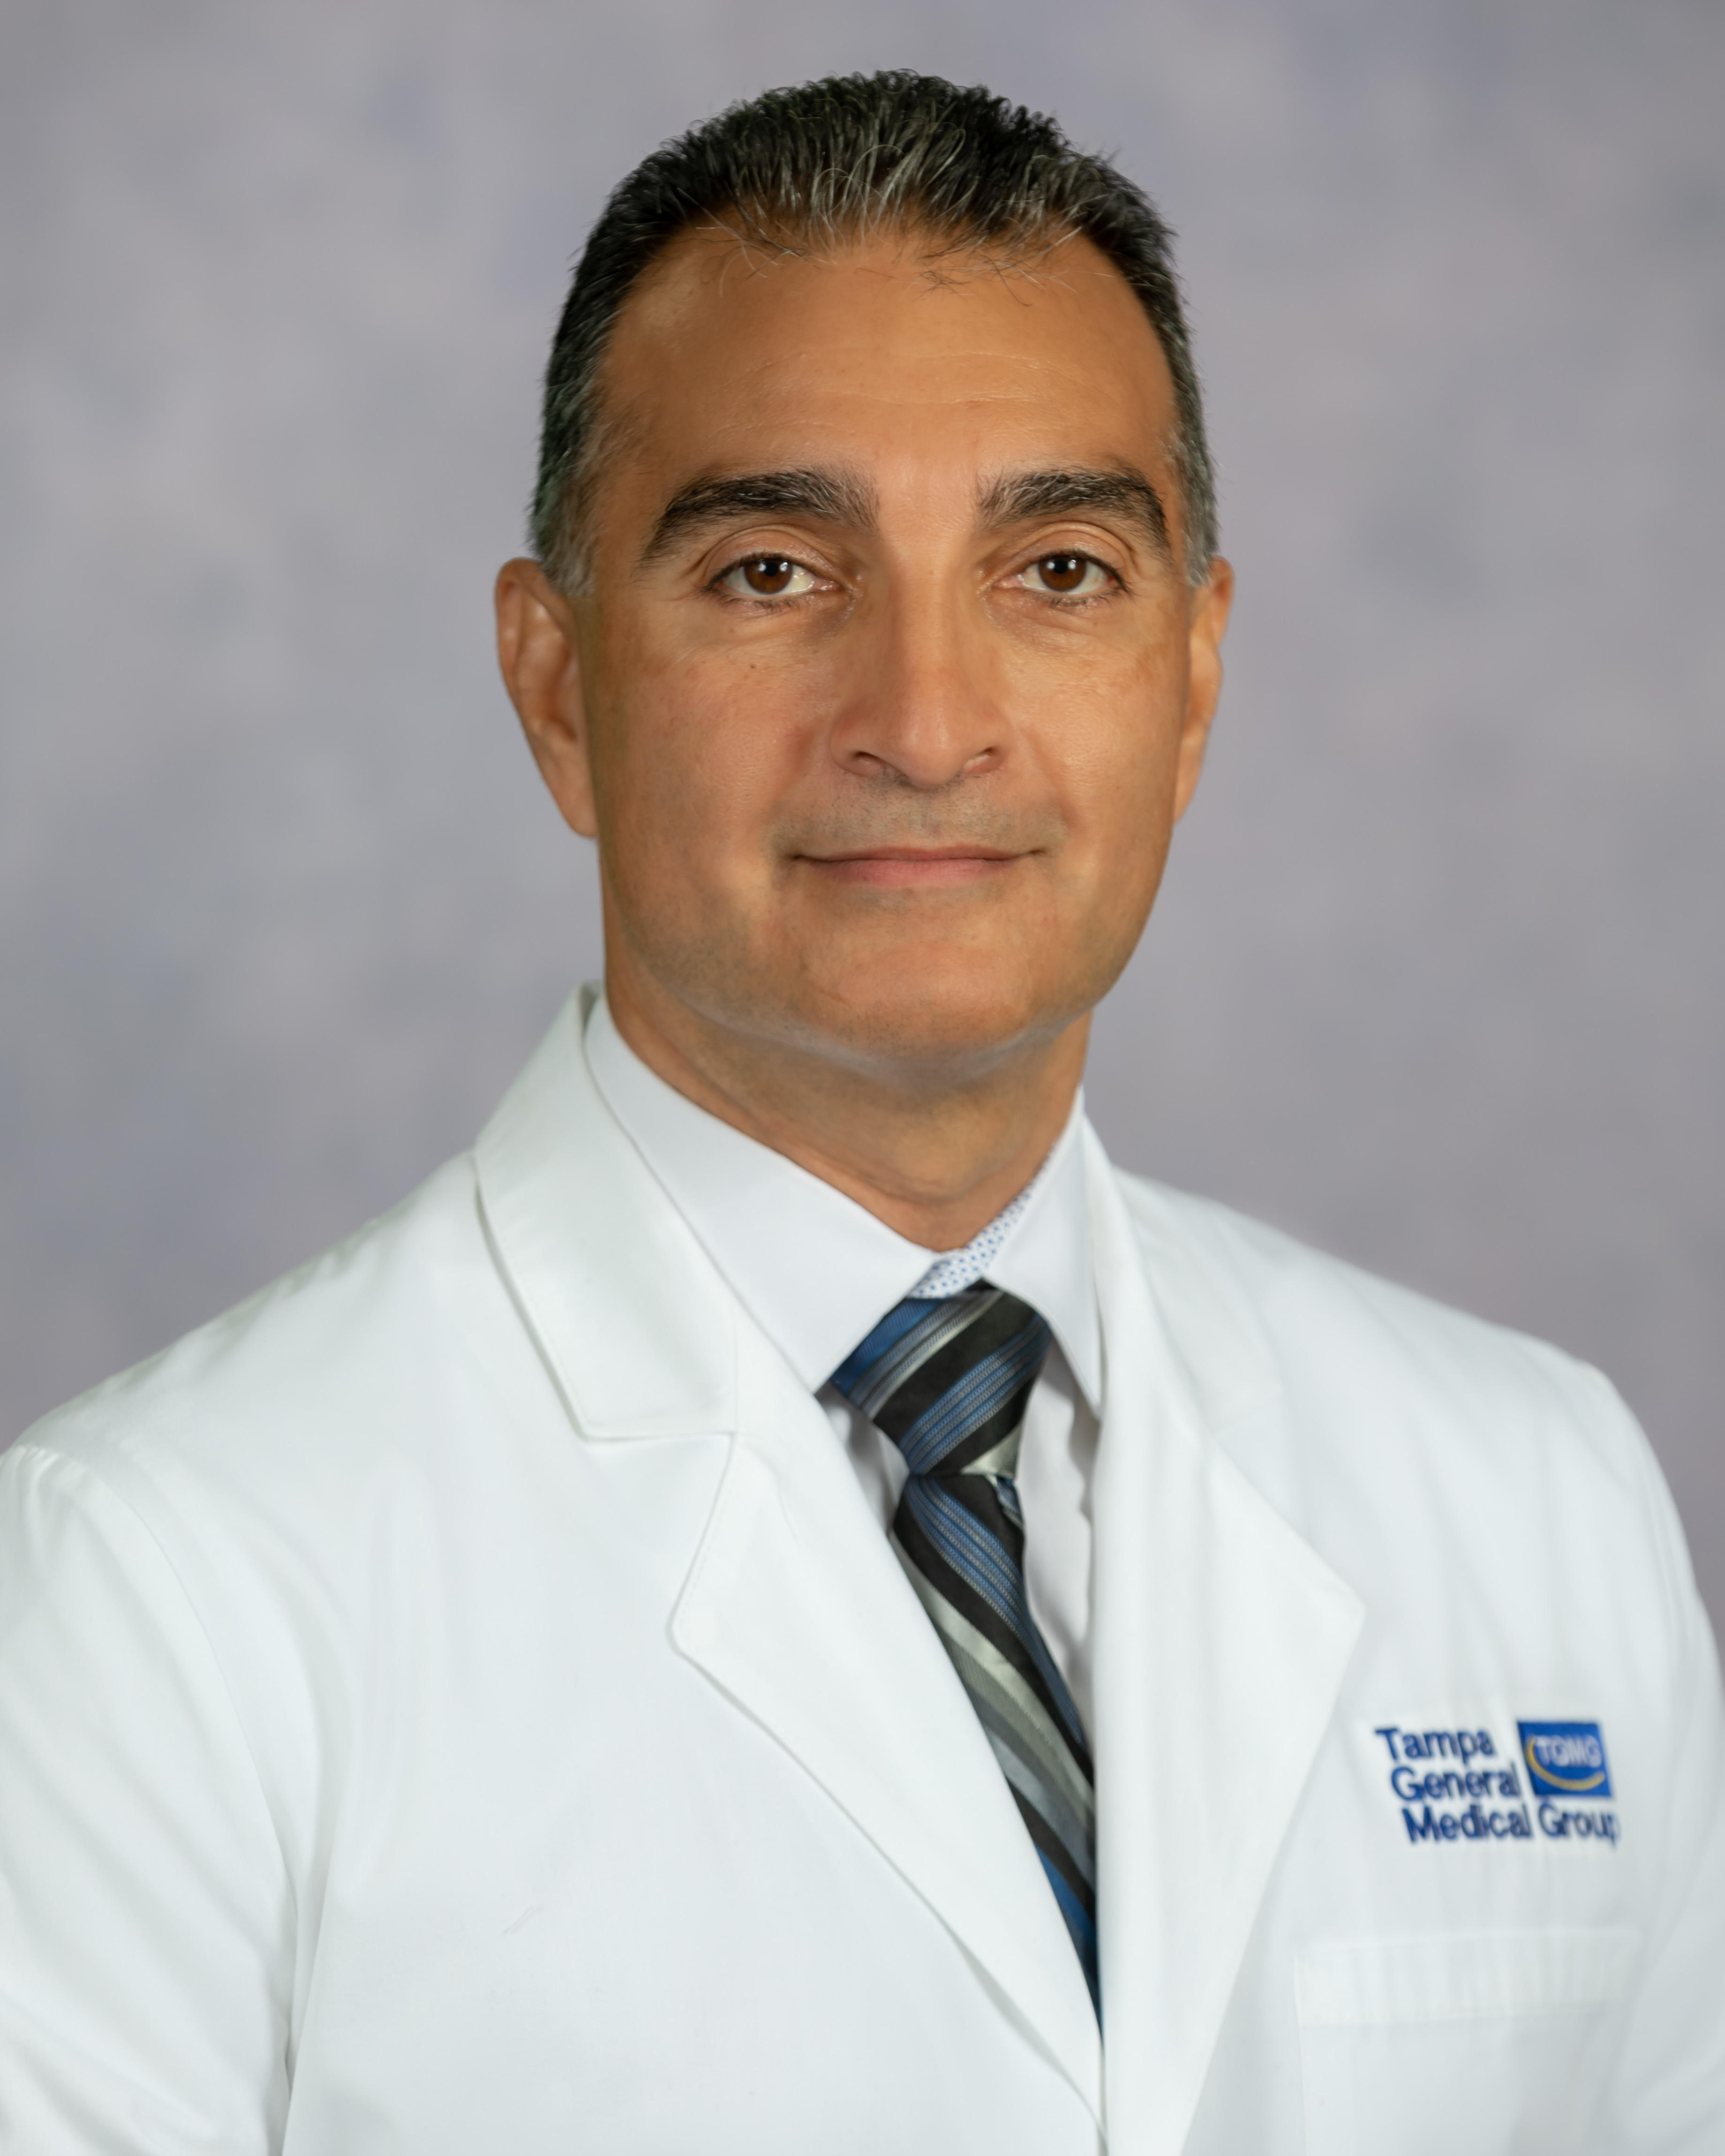 Dr. Luis Lopez, MD